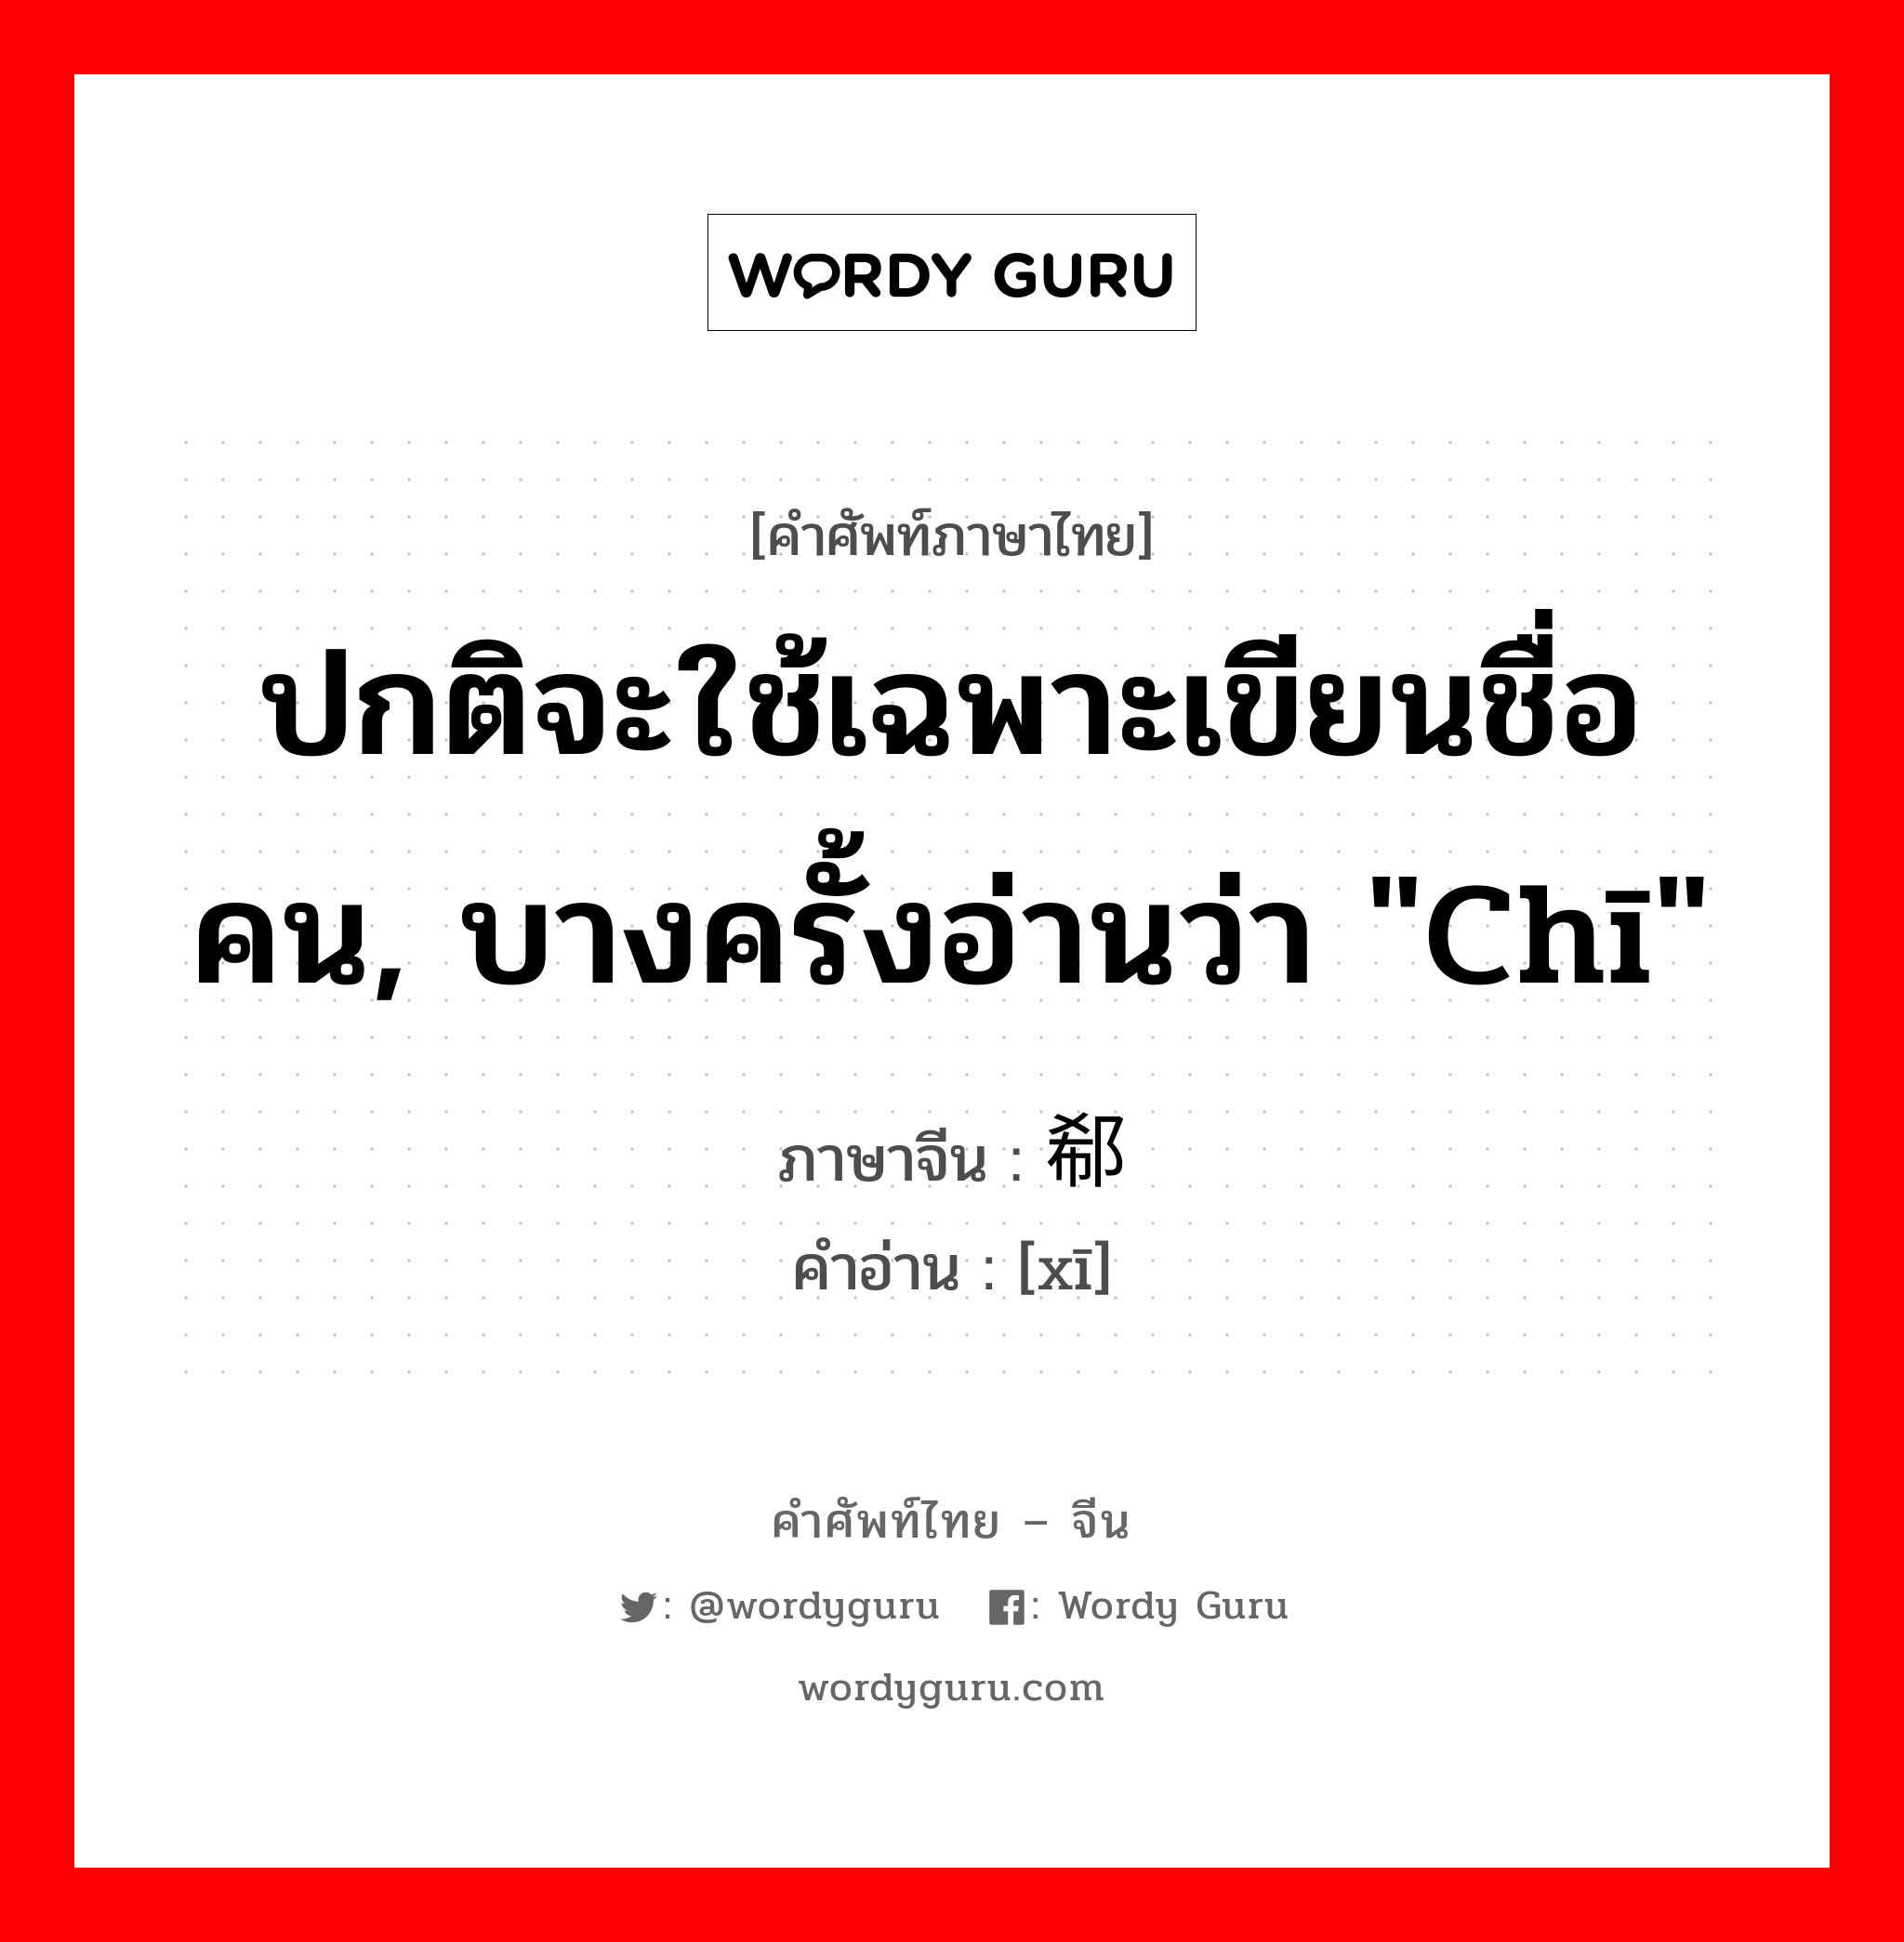 ปกติจะใช้เฉพาะเขียนชื่อคน, บางครั้งอ่านว่า "chī" ภาษาจีนคืออะไร, คำศัพท์ภาษาไทย - จีน ปกติจะใช้เฉพาะเขียนชื่อคน, บางครั้งอ่านว่า "chī" ภาษาจีน 郗 คำอ่าน [xī]